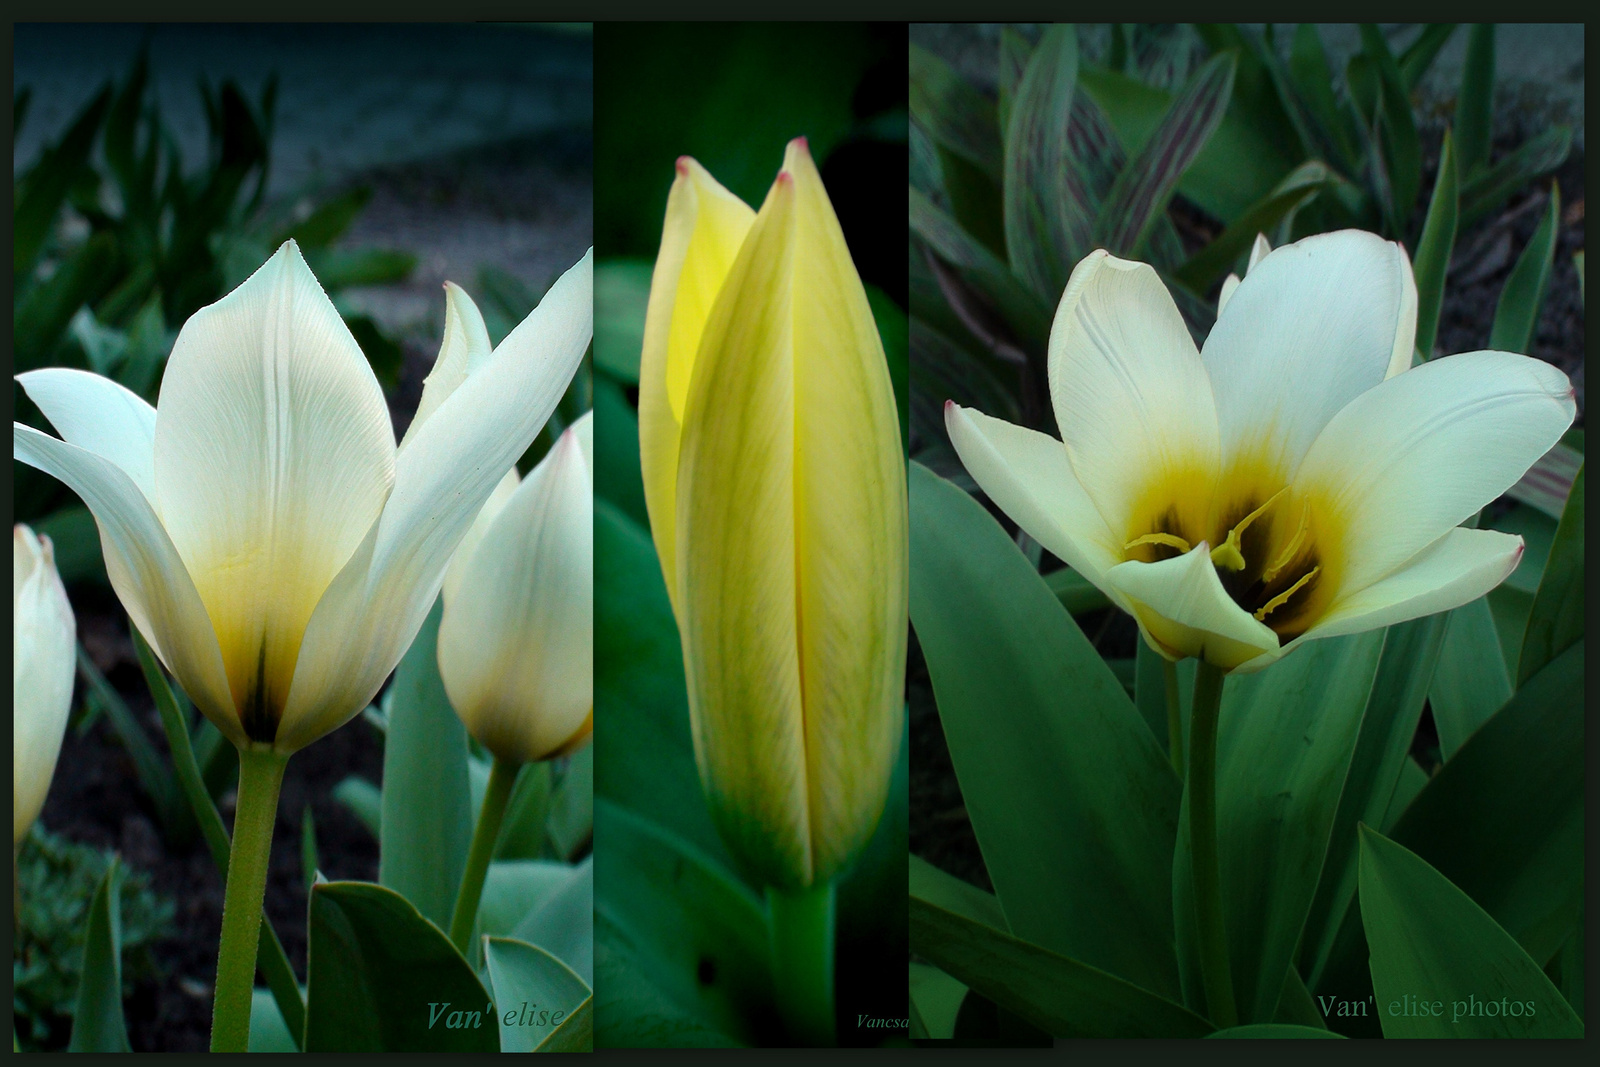 Életszakaszok egy tulipán életéből.